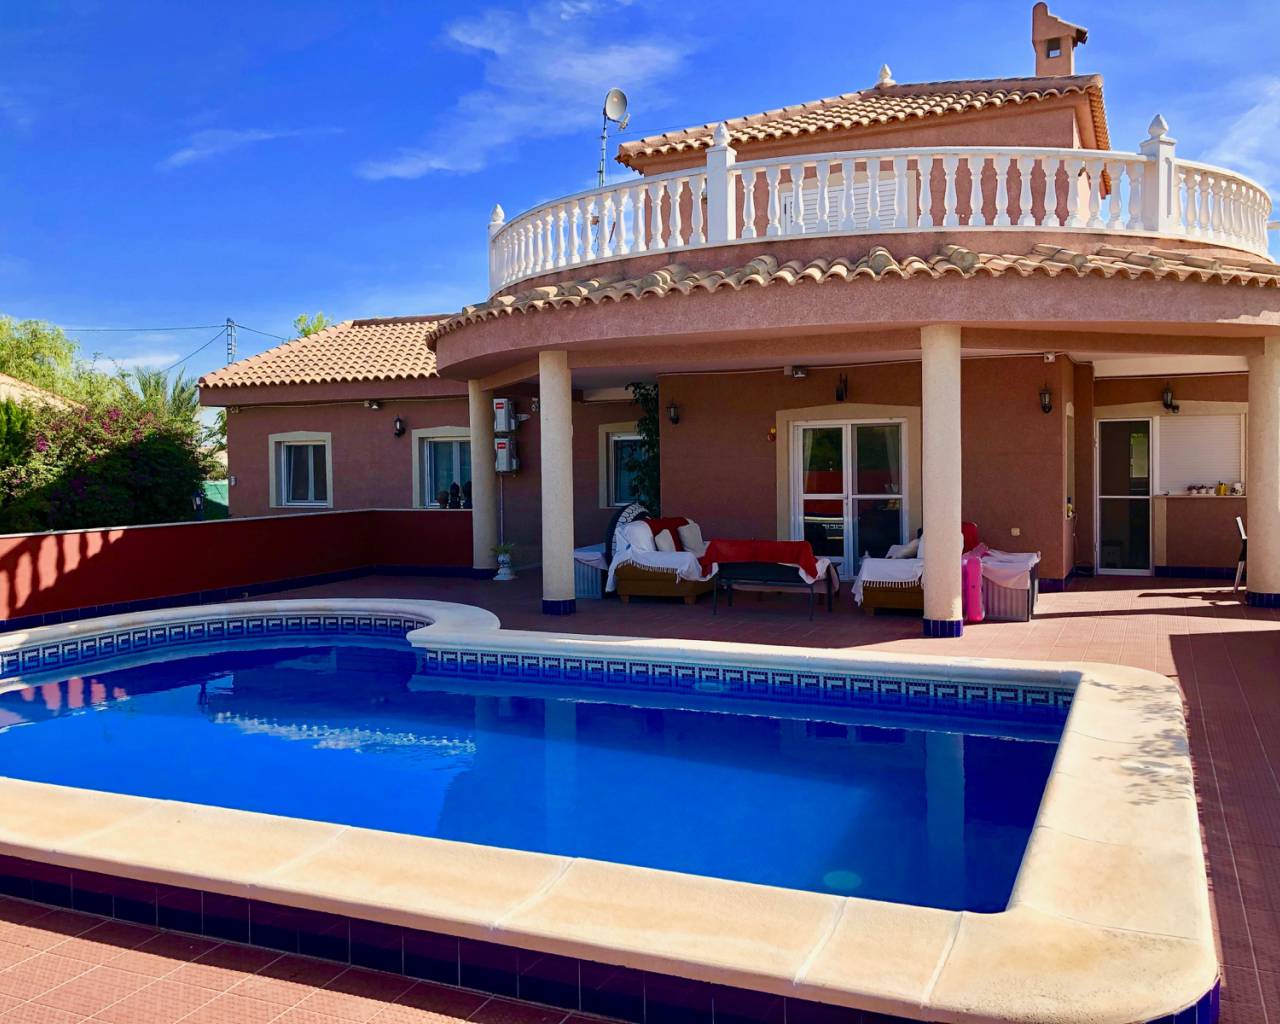 For sale: 3 bedroom house / villa in El Realenc / El Realengo, Costa Blanca